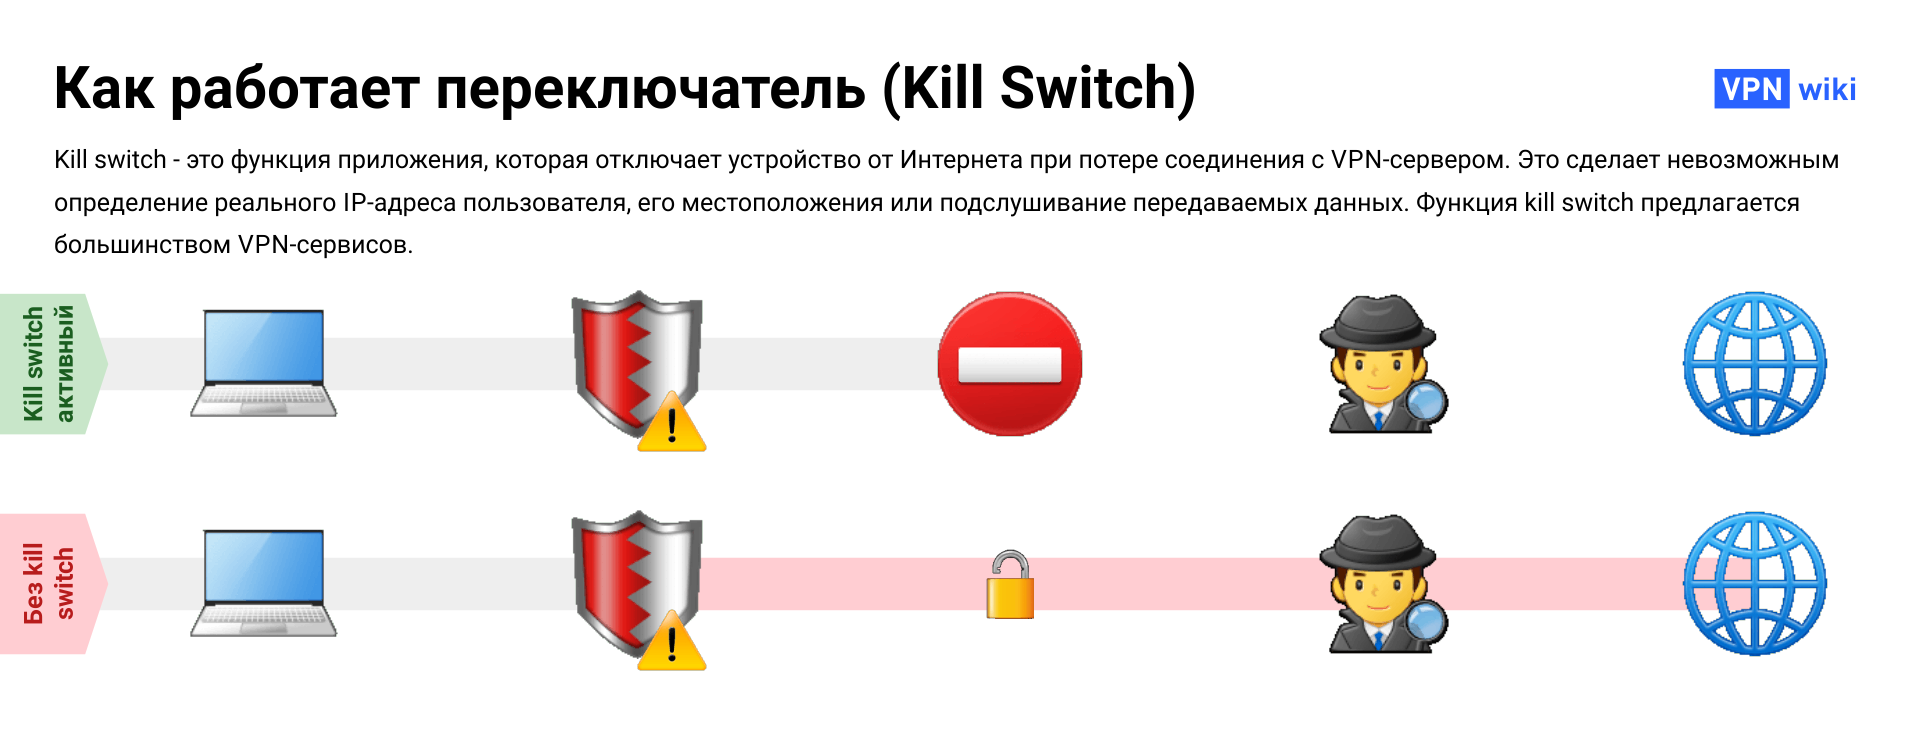 Что такое VPN kill switch и как он работает?